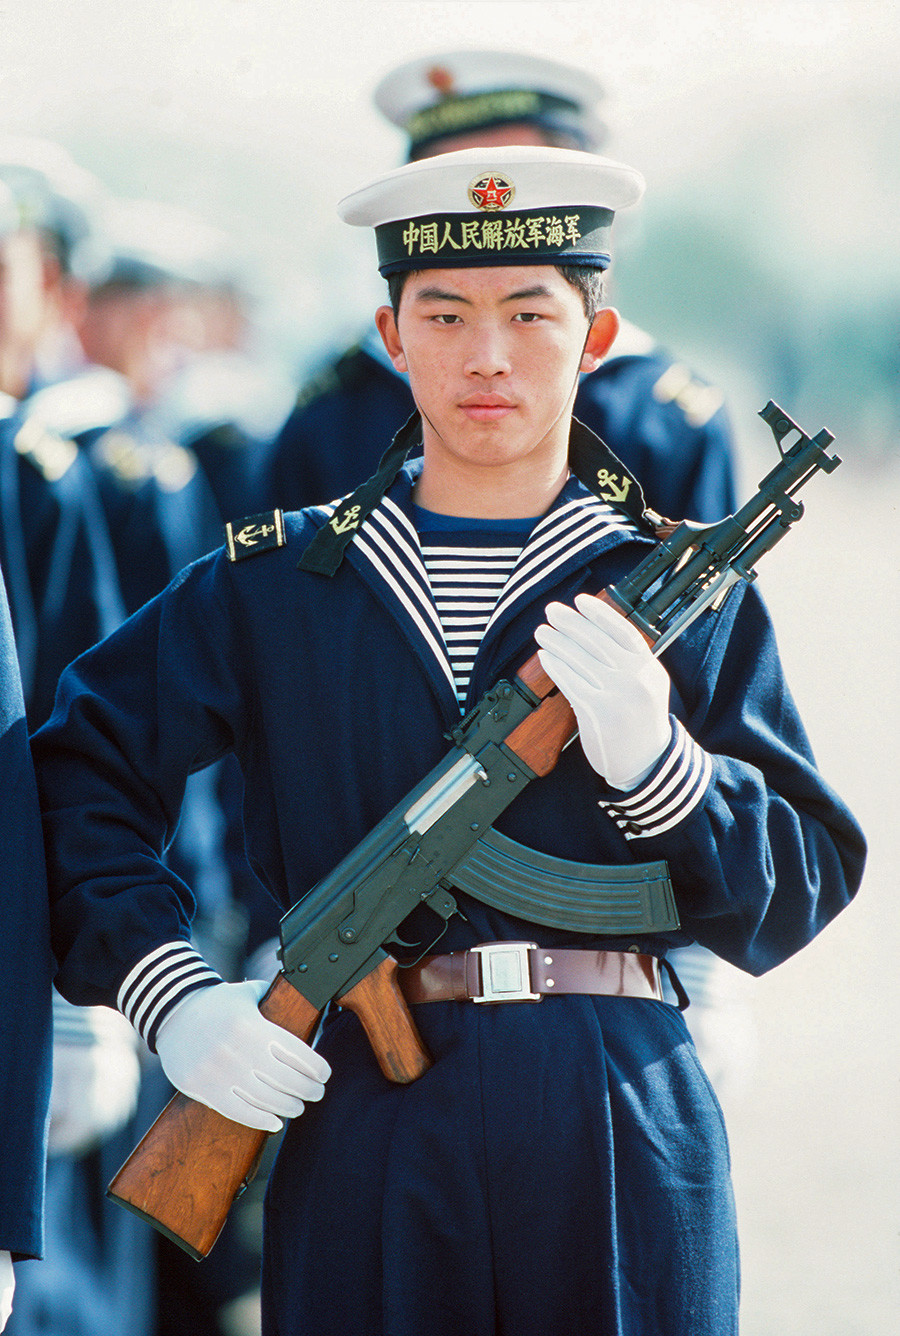 56式半自動歩槍（SKS）を掲げている中国の水兵